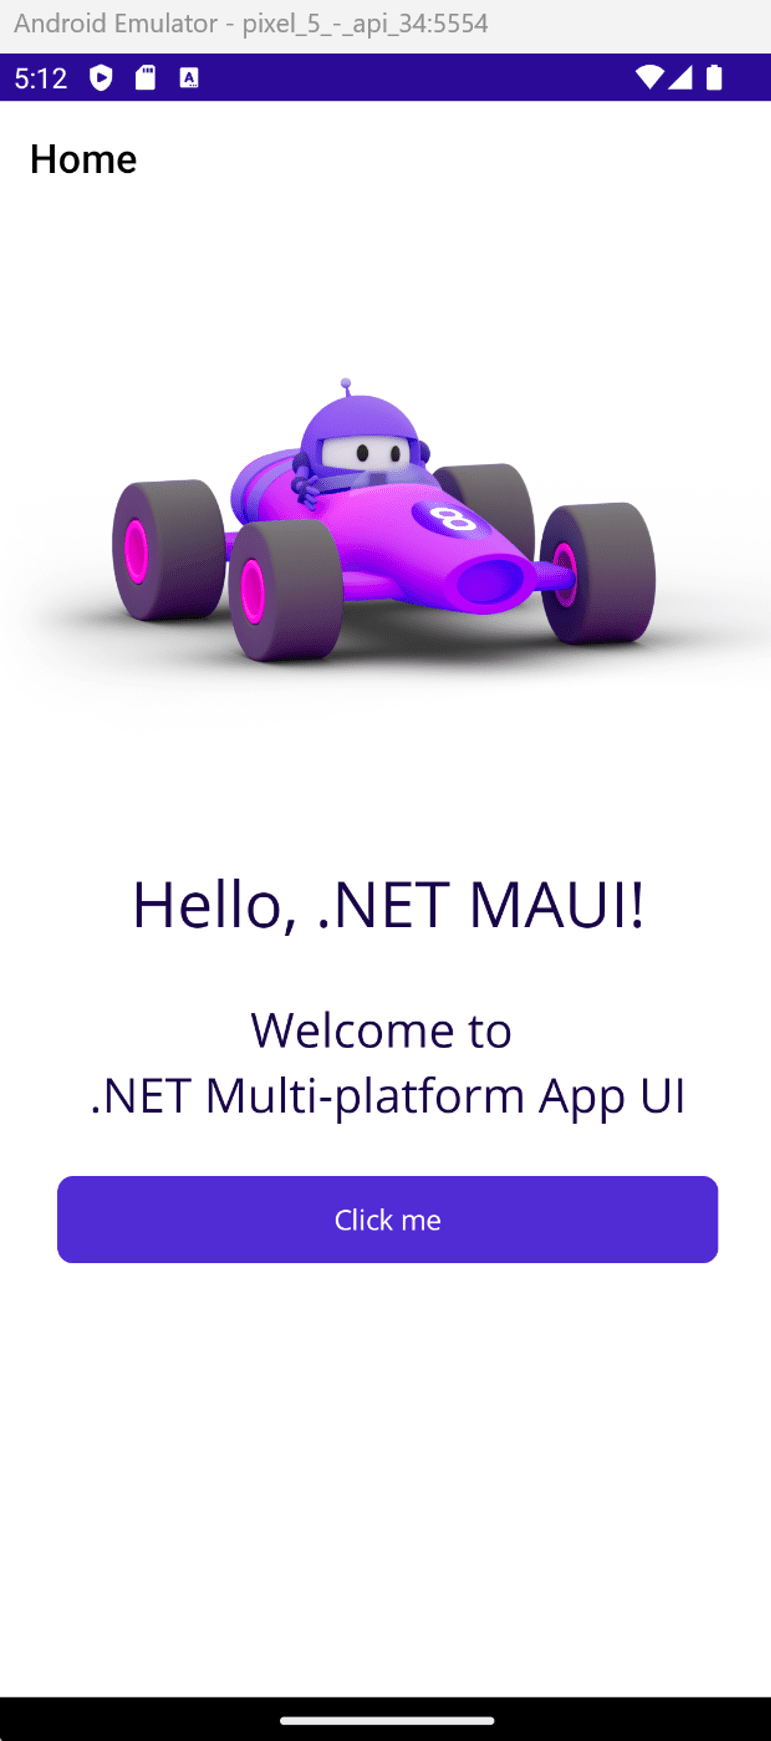 运行 .NET MAUI 应用的 Android Emulator。显示了 